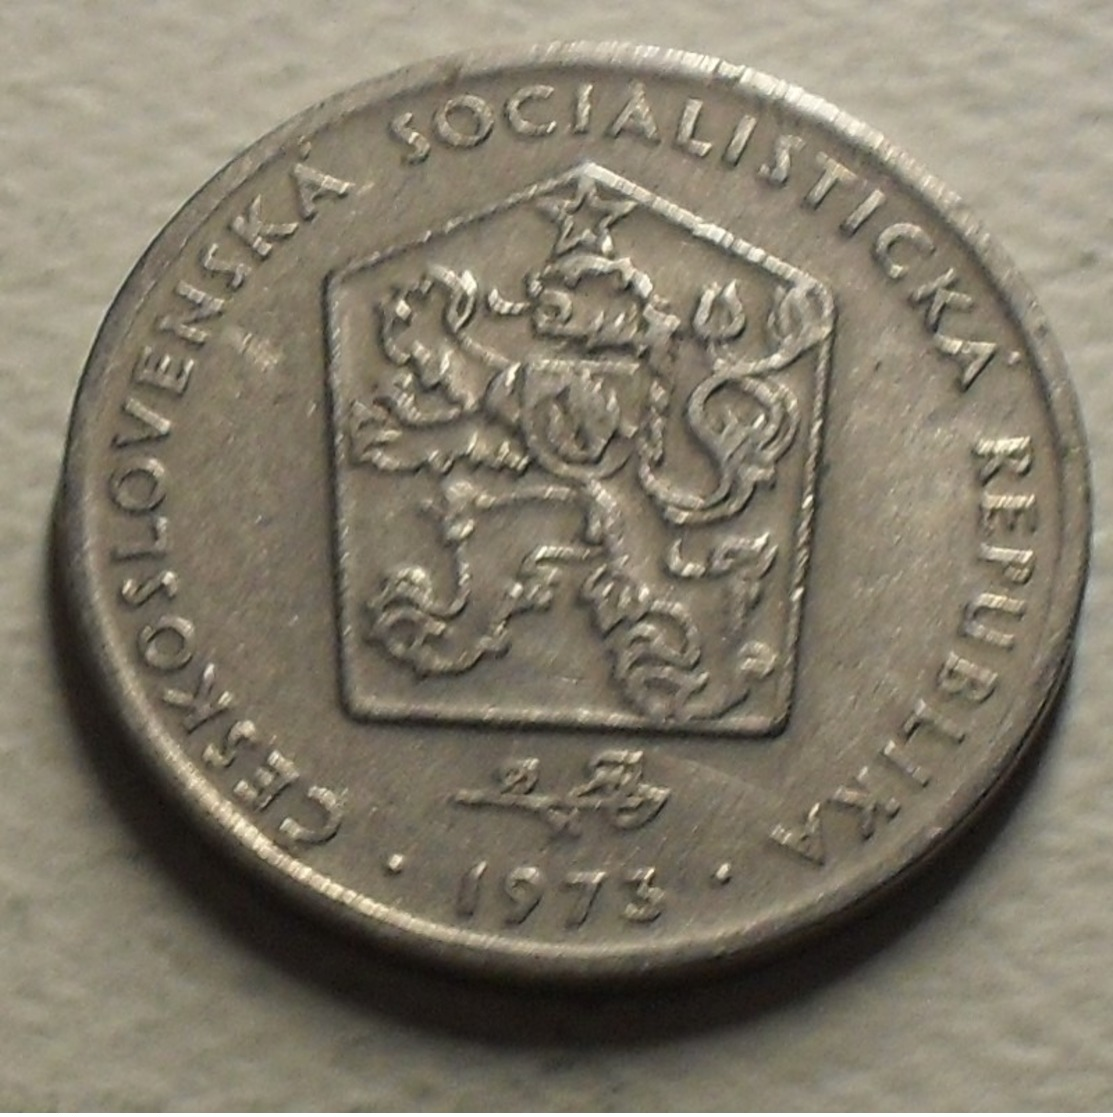 1973 - Tchécoslovaquie - Czechoslovakia - 2 KORUNY - KM 75 - Tschechoslowakei